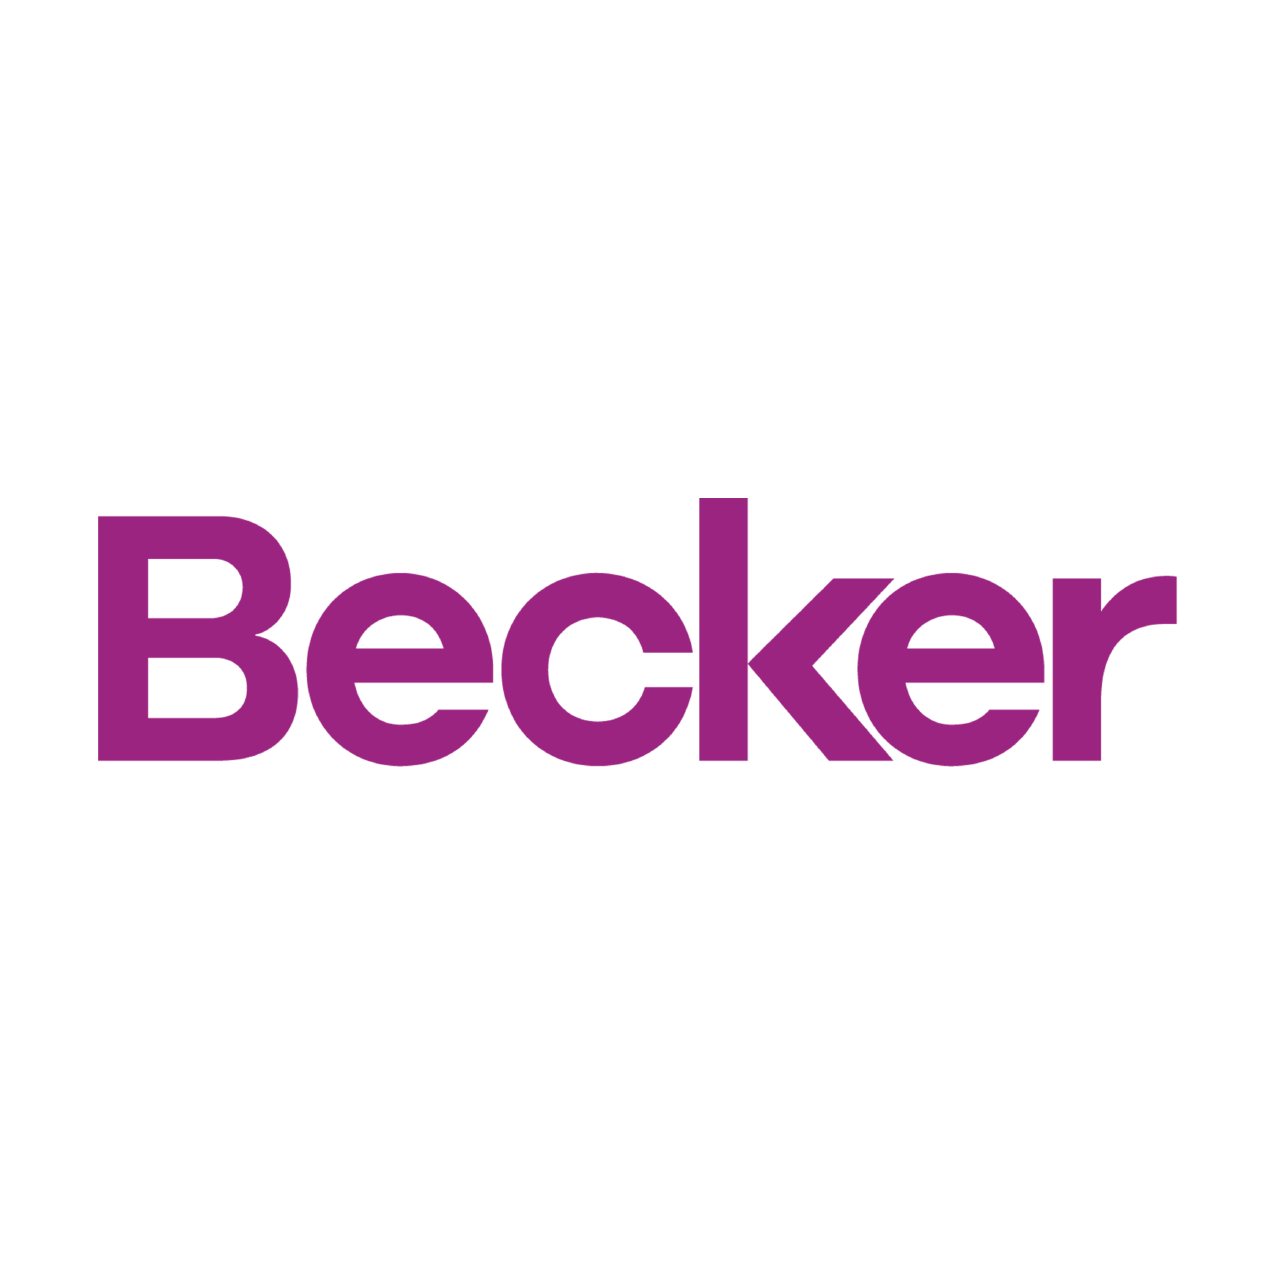 New_Becker-logo_online_Artboard-1.png